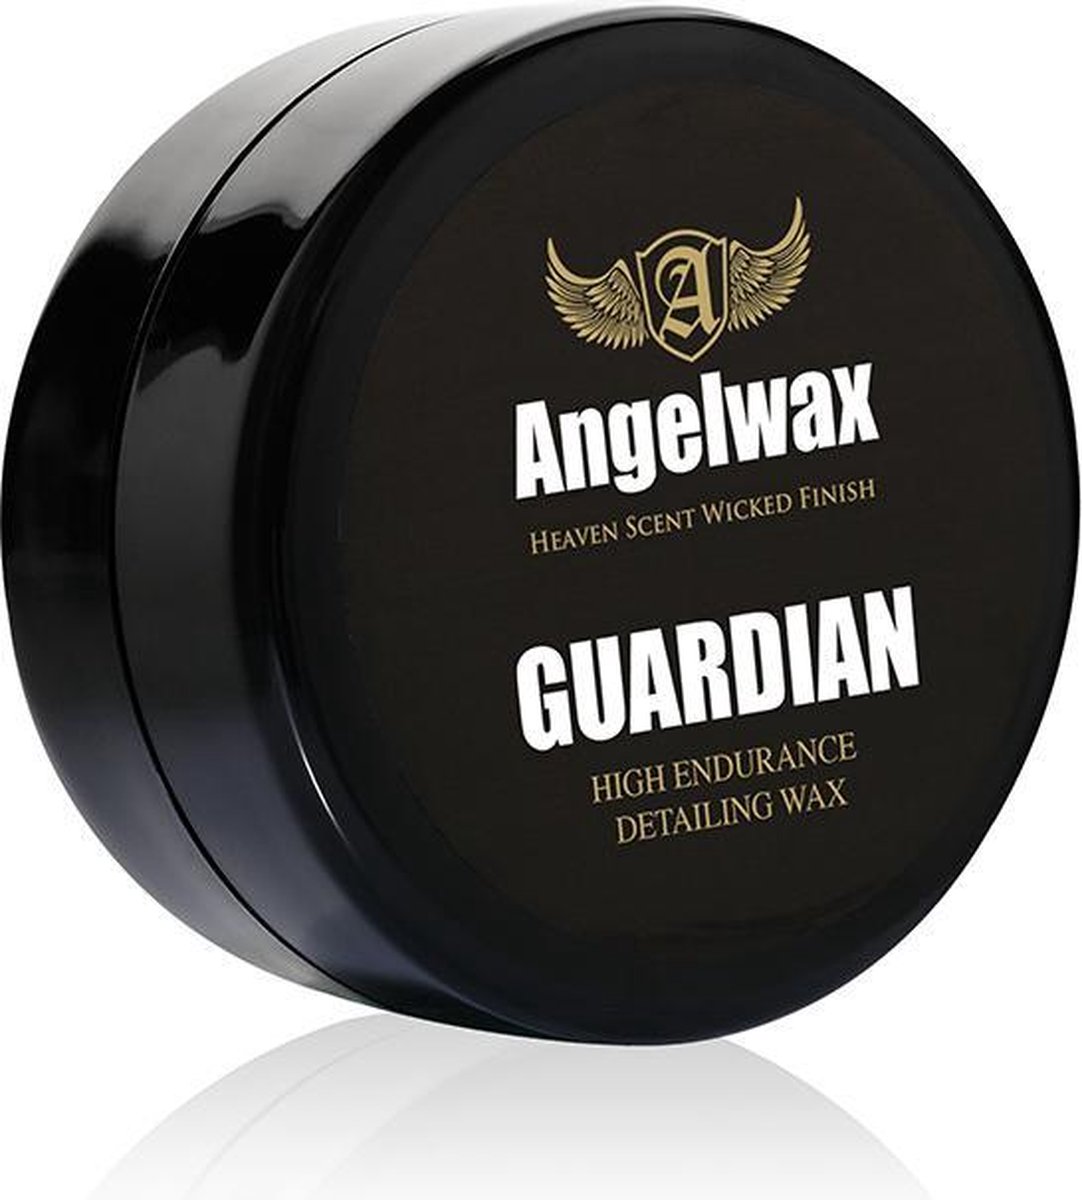 Angelwax Guardian 33ml - Endurance paste wax - carnauba wax - Angelwax haar meest duurzame wax aan u aanbieden welke uw voertuig minimaal een bescherming van meer dan 6 maanden biedt.